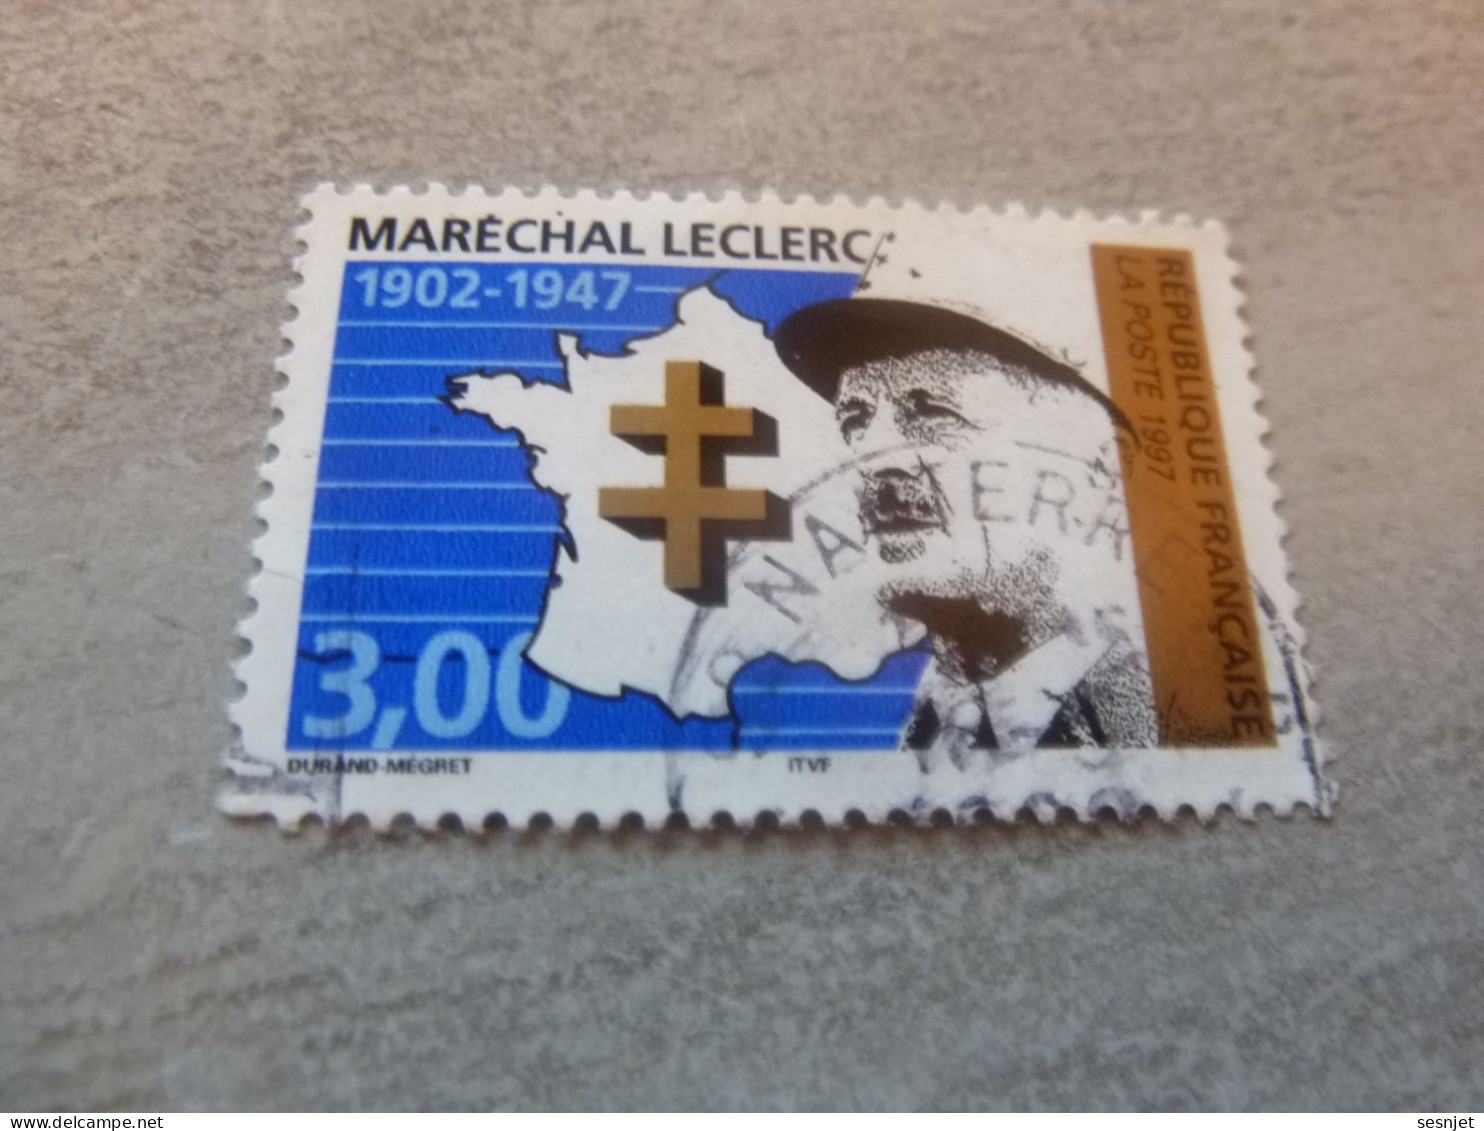 Général Leclerc (1902-1947) Maréchal - 3f. - Yt 3126 - Vert, Noir Et Bleu - Oblitéré - Année 1997 - - Usados